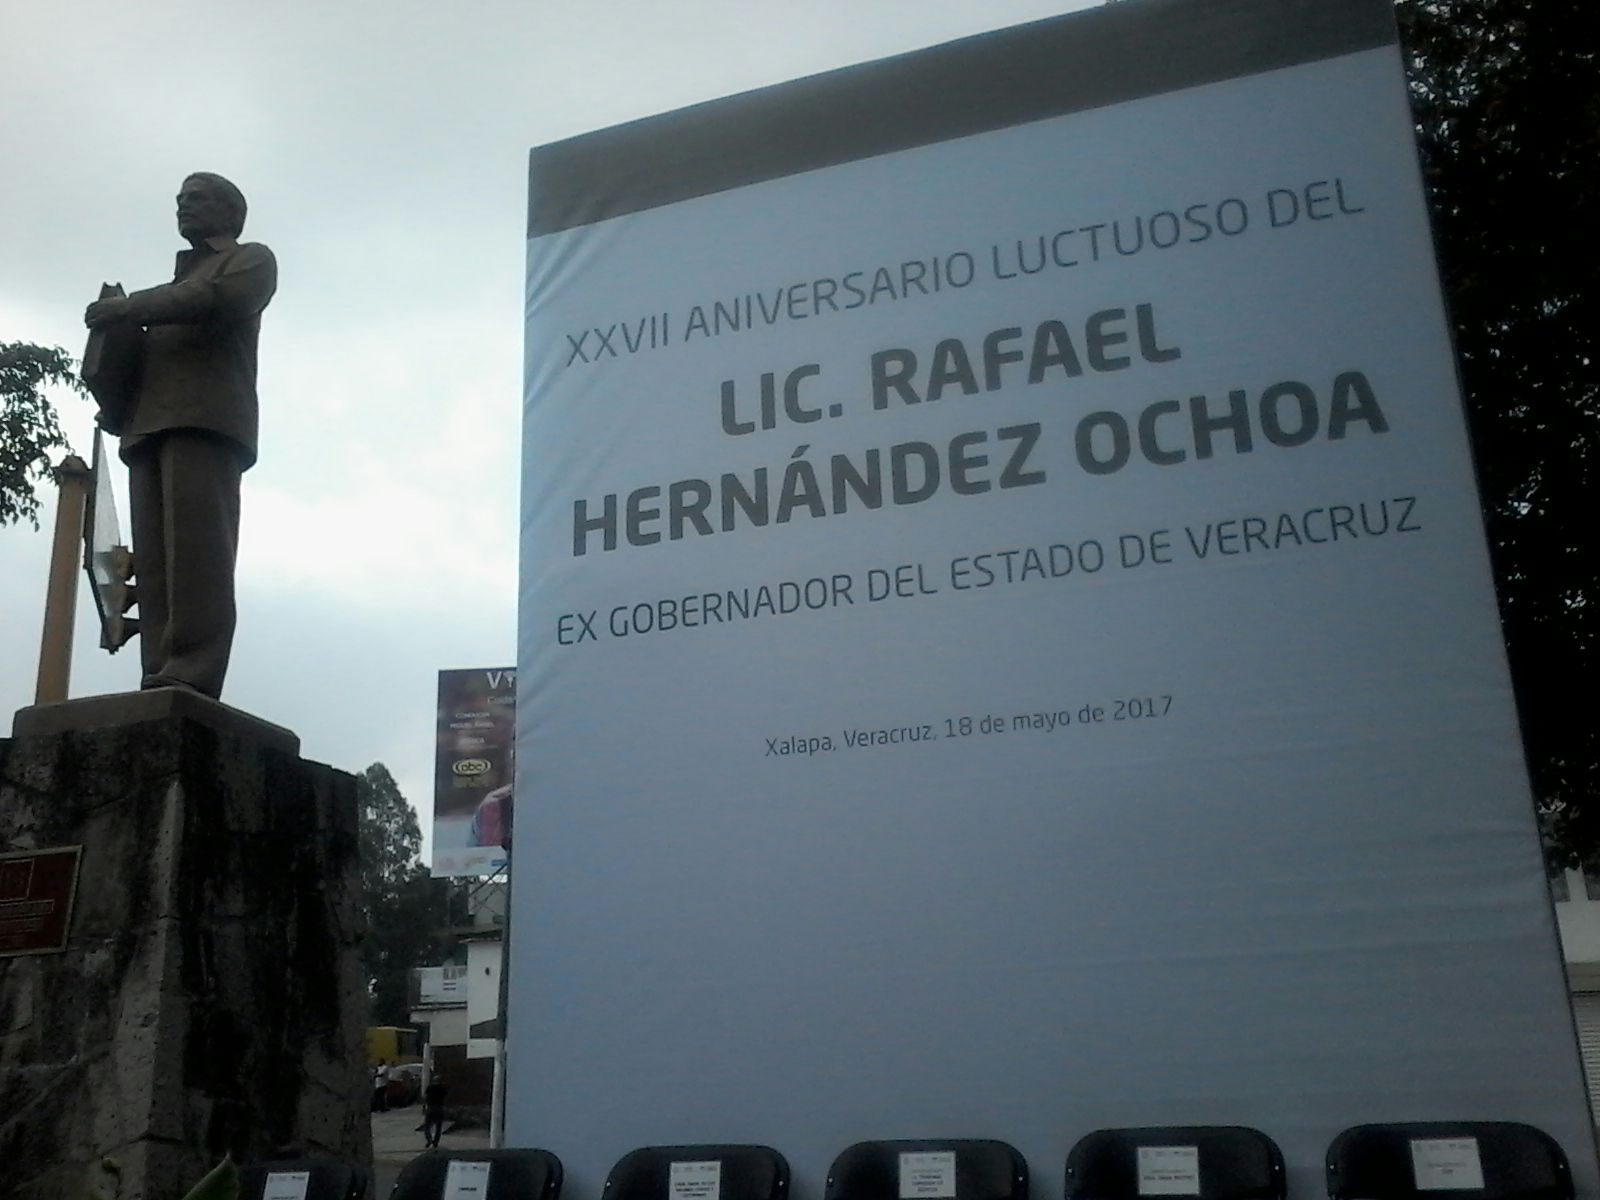 Se conmemora aniversario luctuoso de Rafael Hernández Ochoa, exgobernador de Veracruz